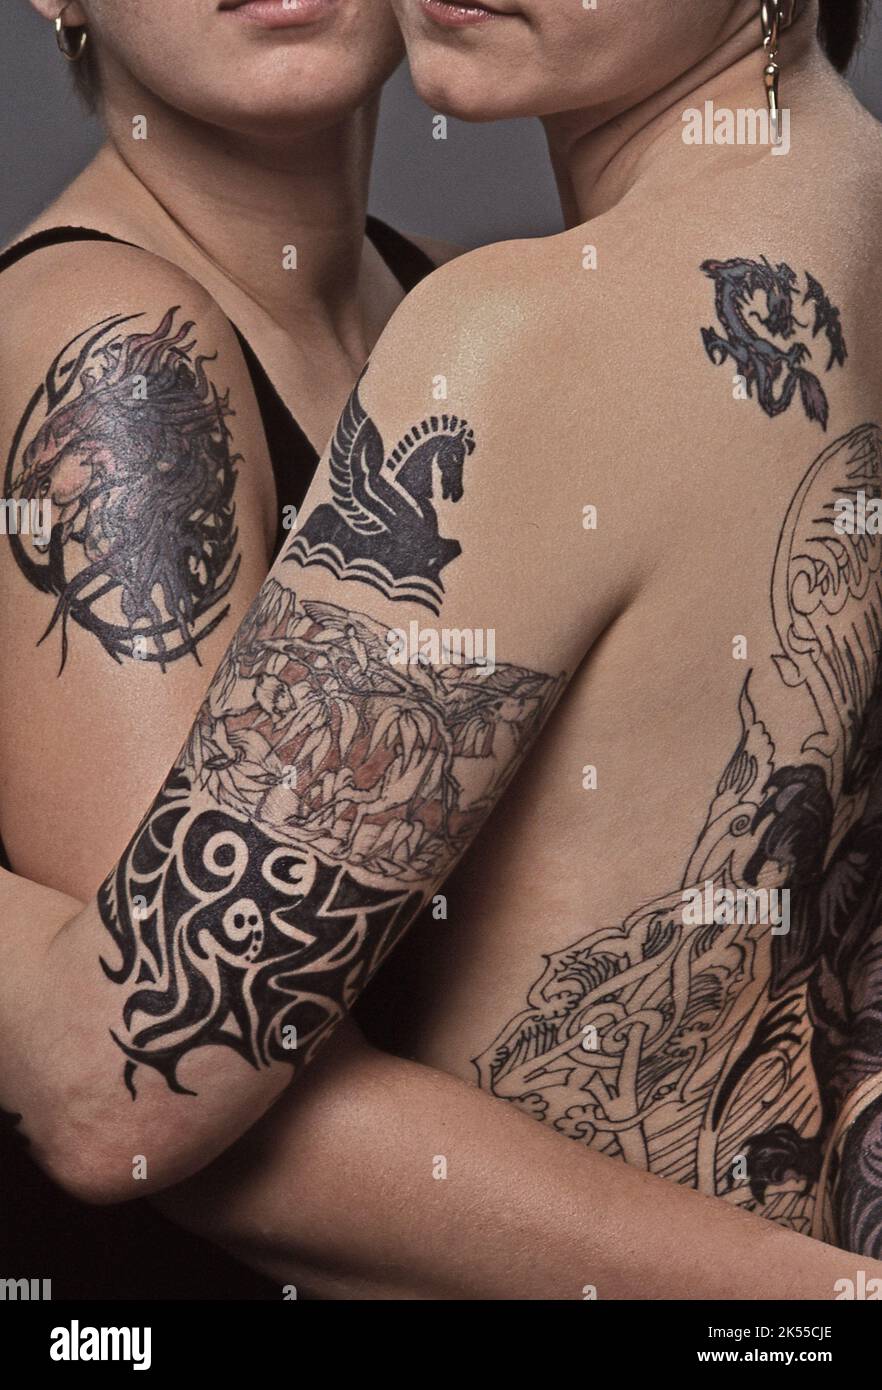 Donne con tatuaggio body art Foto Stock